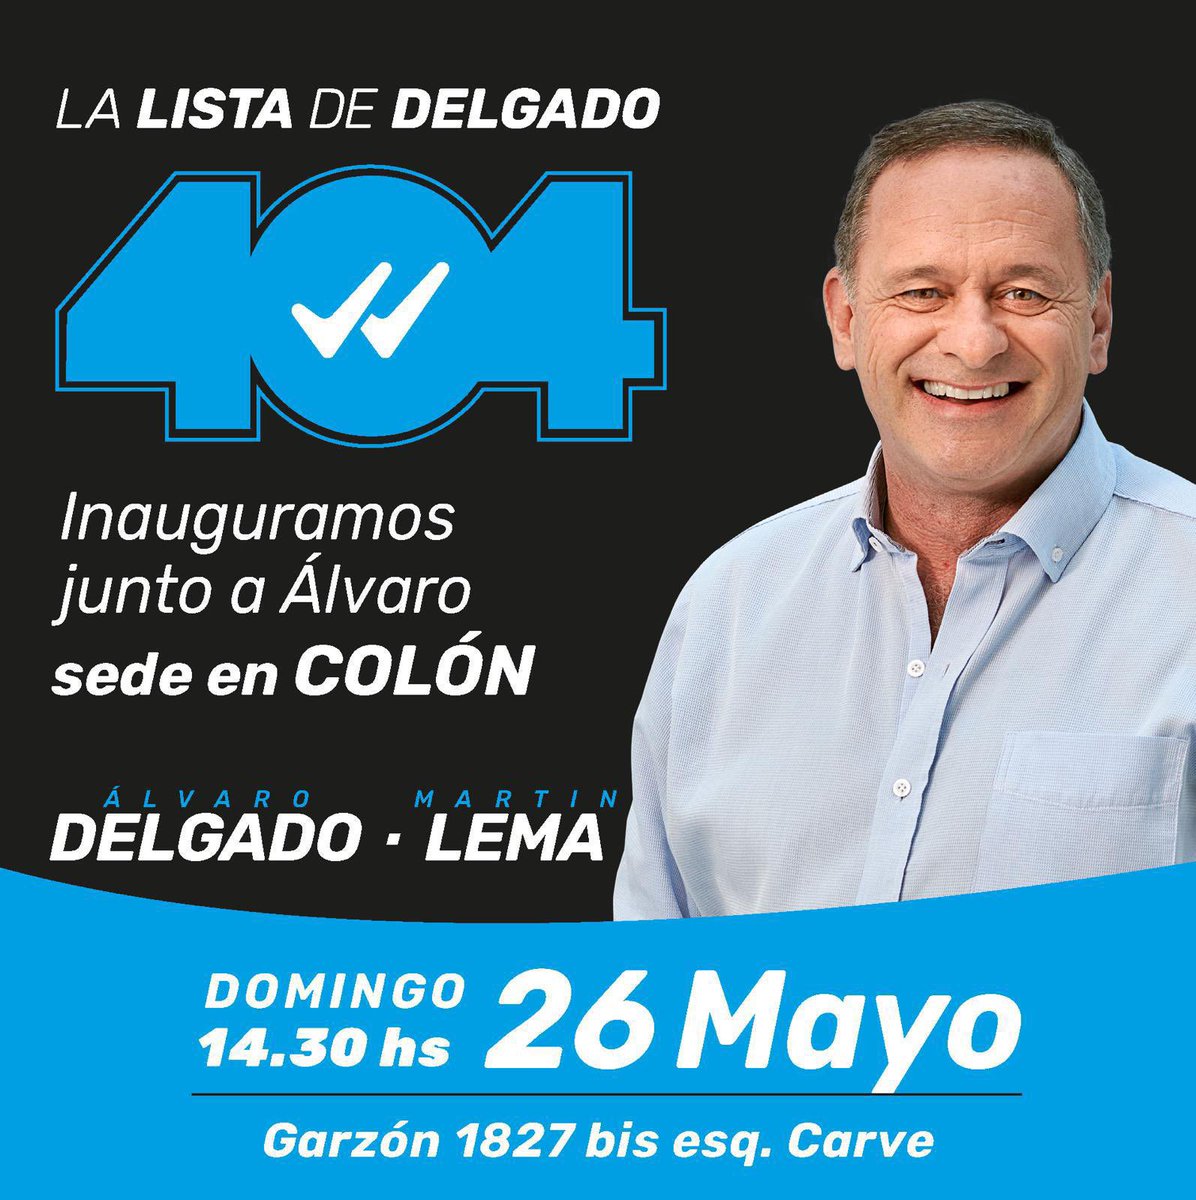 Hoy! Los esperamos junto a nuestro candidato @AlvaroDelgadoUy #UruguayParaAdelante